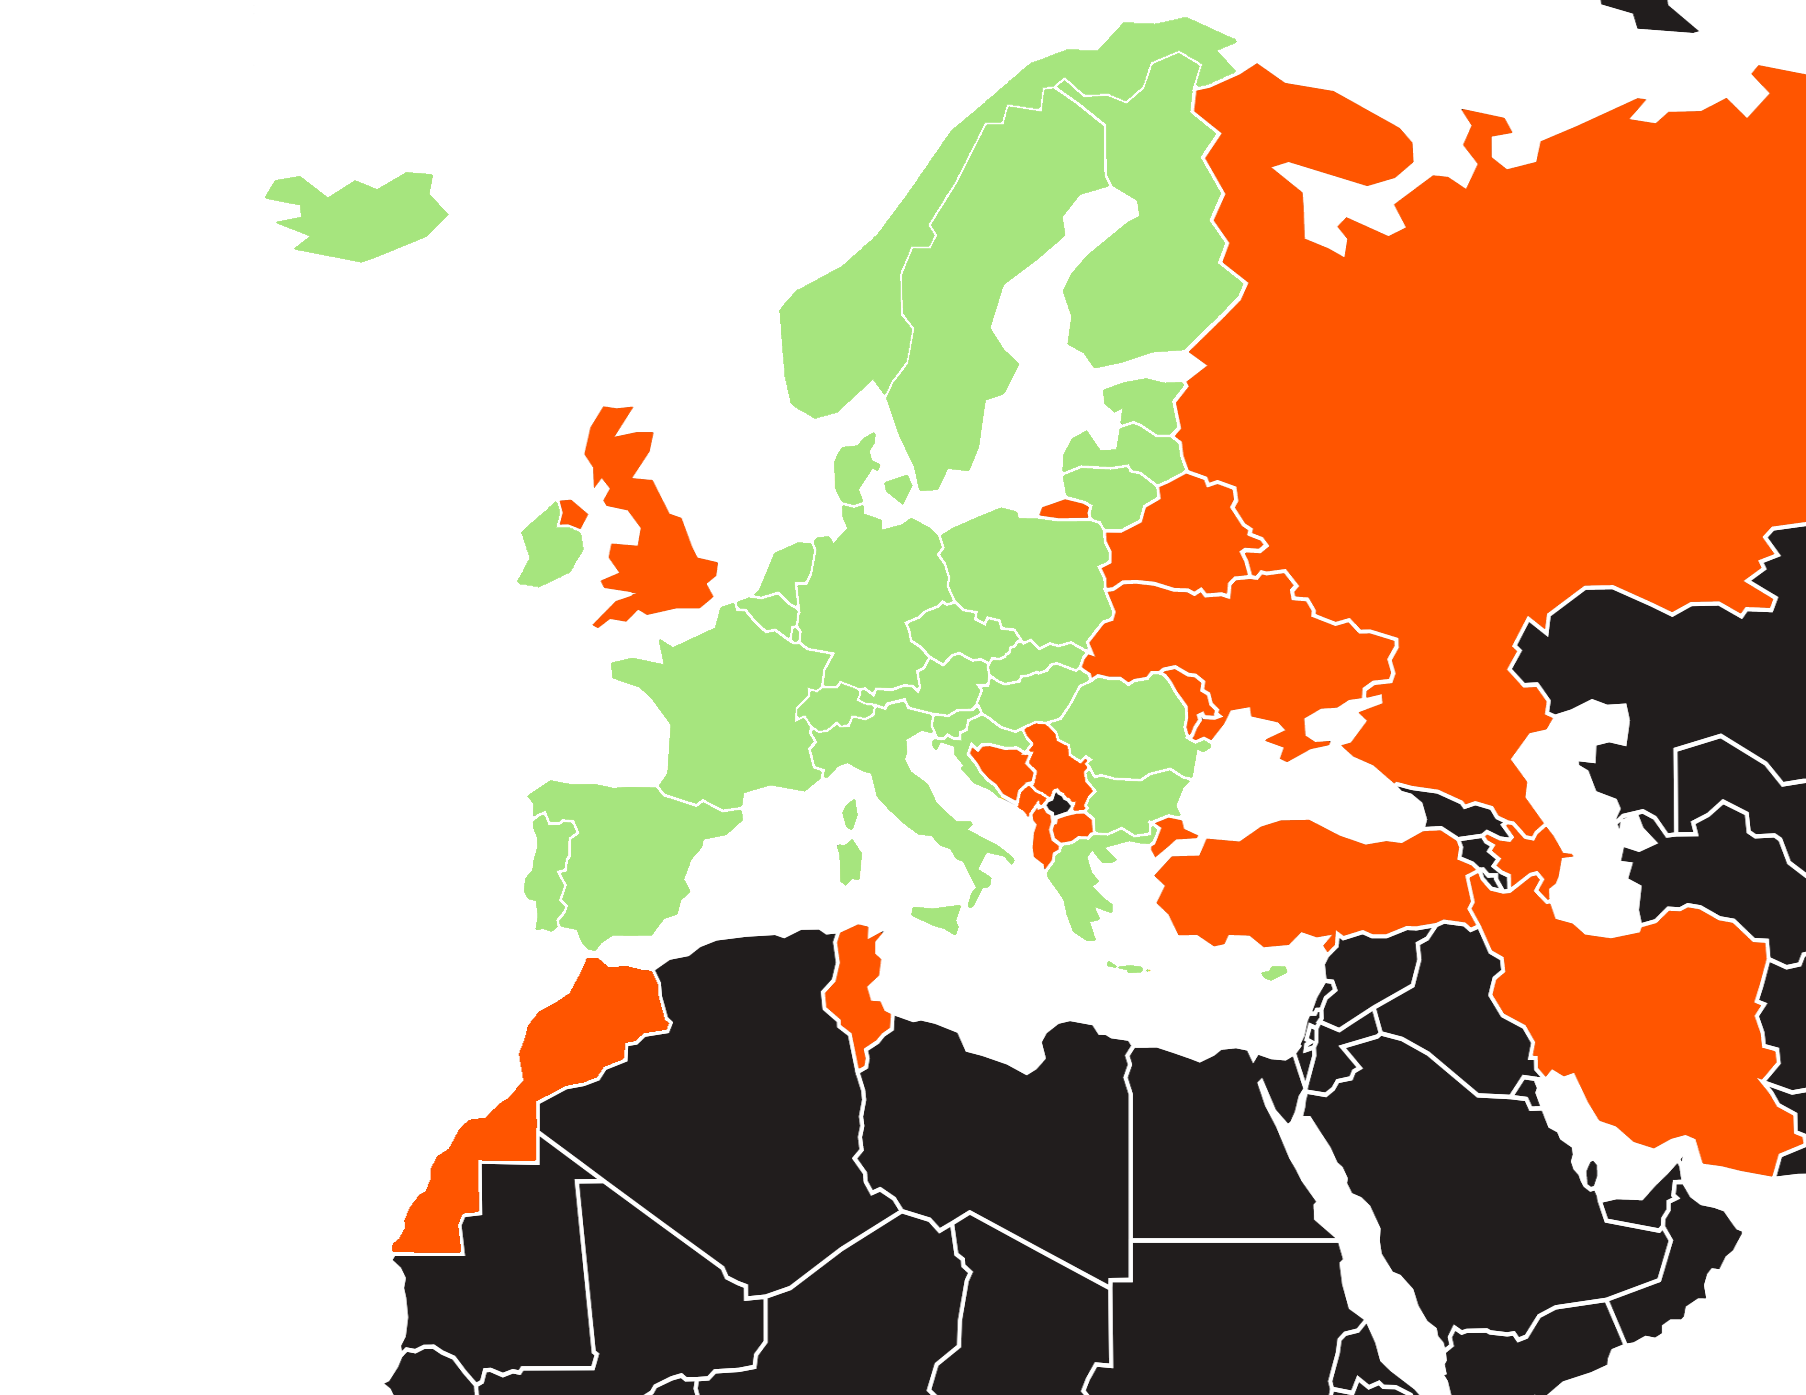 Karte welche anzeigt, in welchen Ländern man die Grüne Versicherungskarte noch benötigt